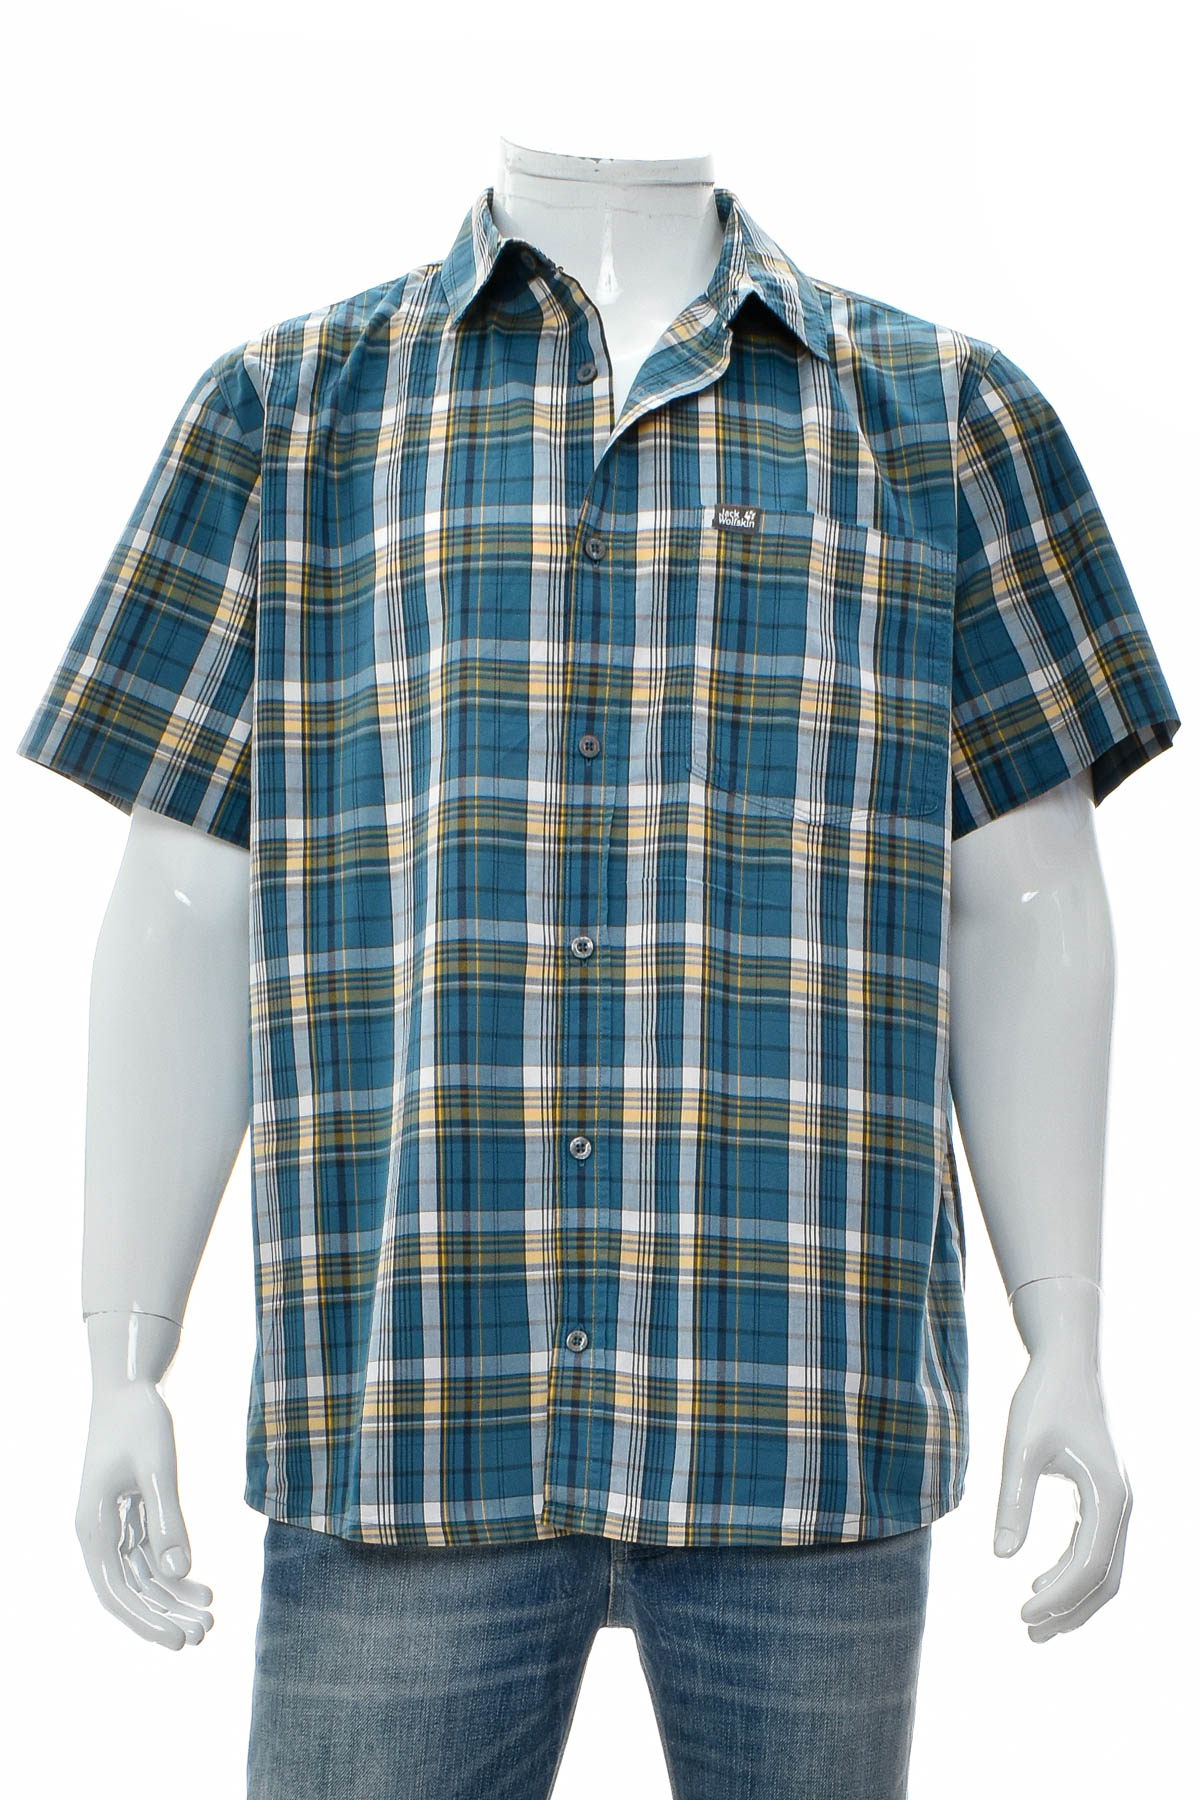 Men's shirt - Jack Wolfskin - 0